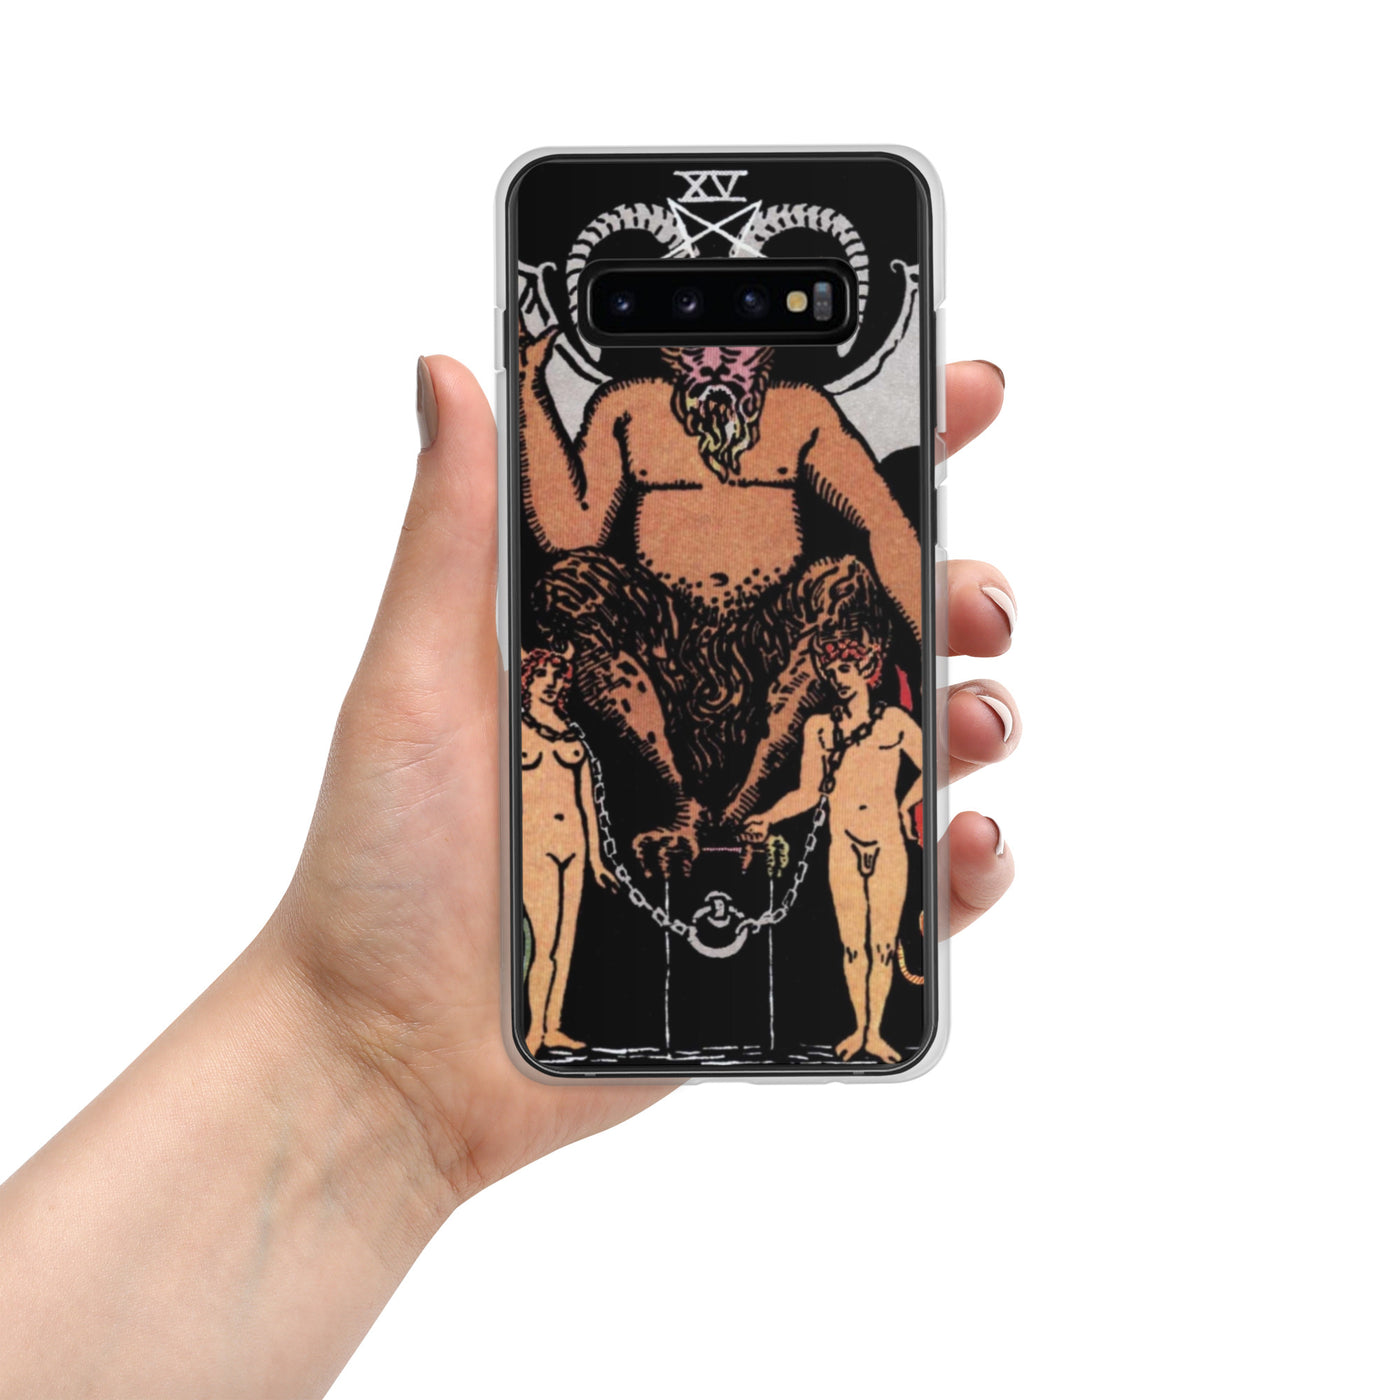 Samsung phone case - The Devil XV